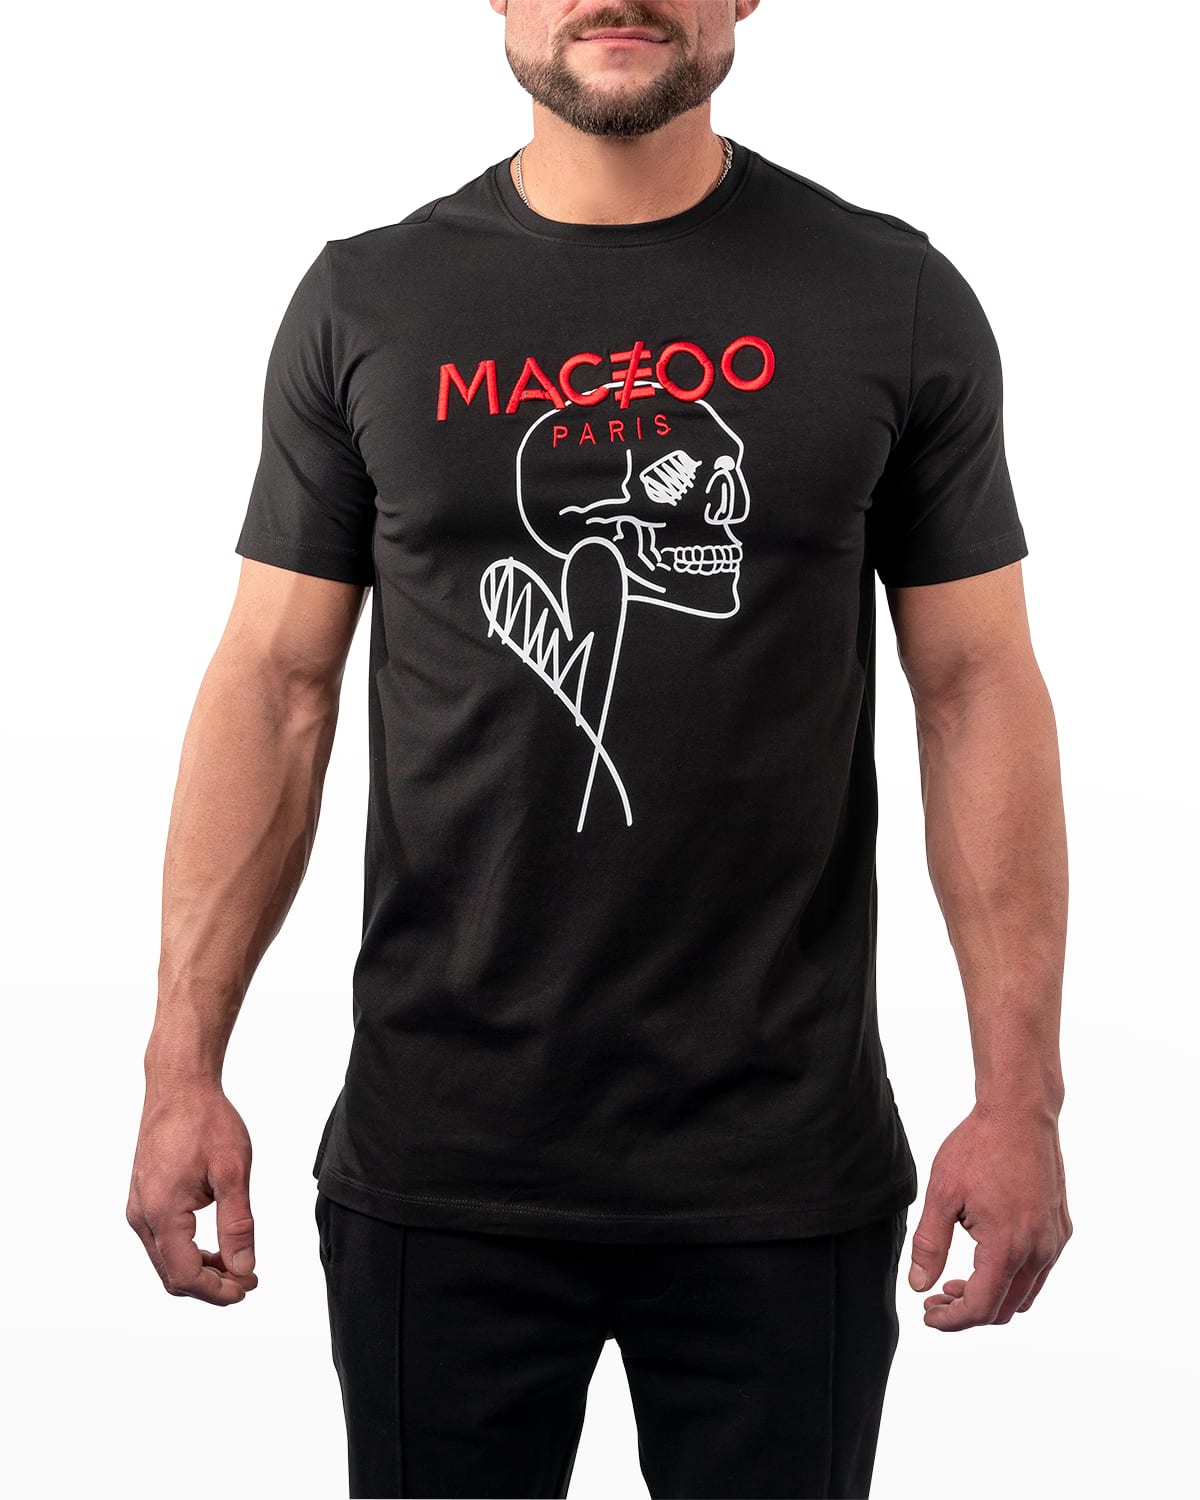 Maceoo Men's Skull Heart Logo T-Shirt